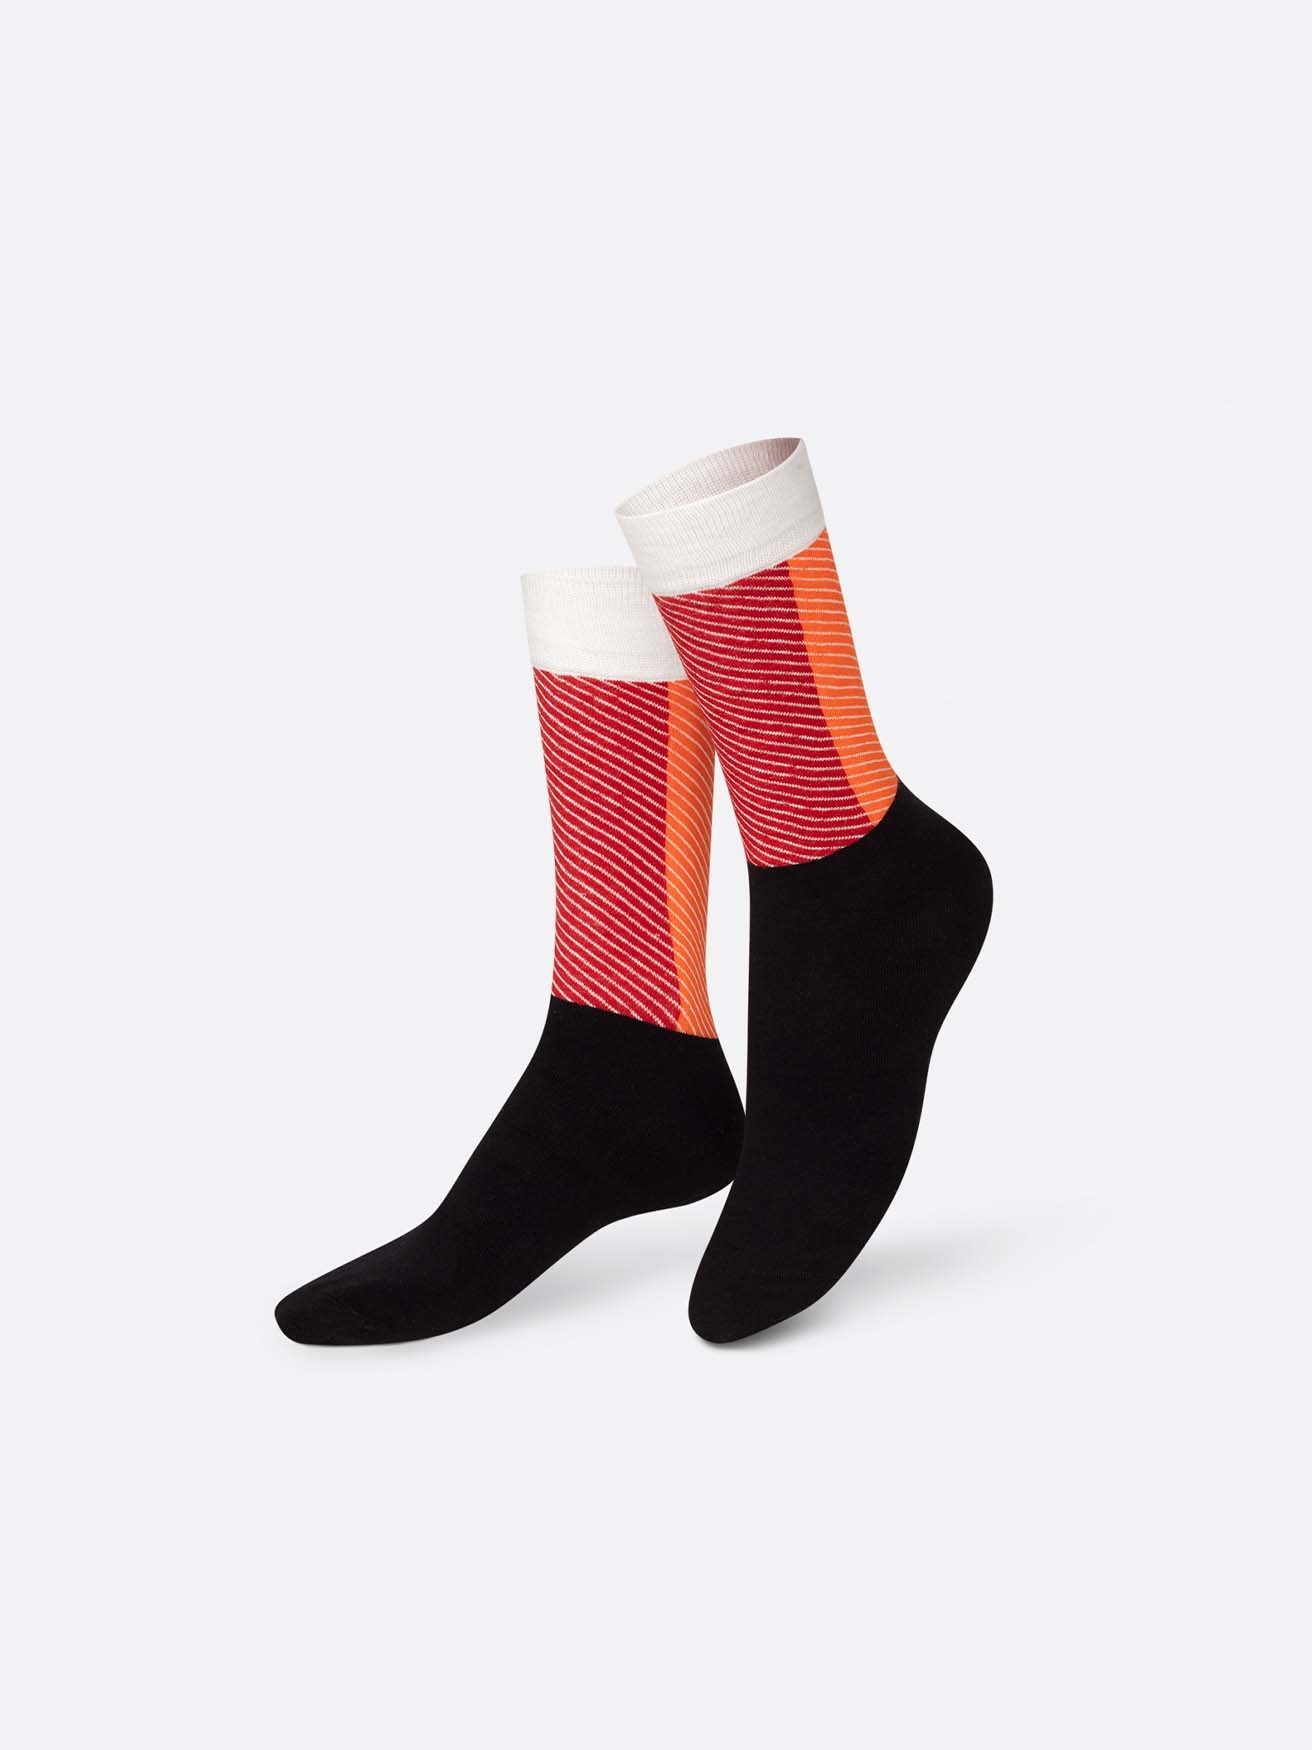 Socks nigiri box (2 pairs)